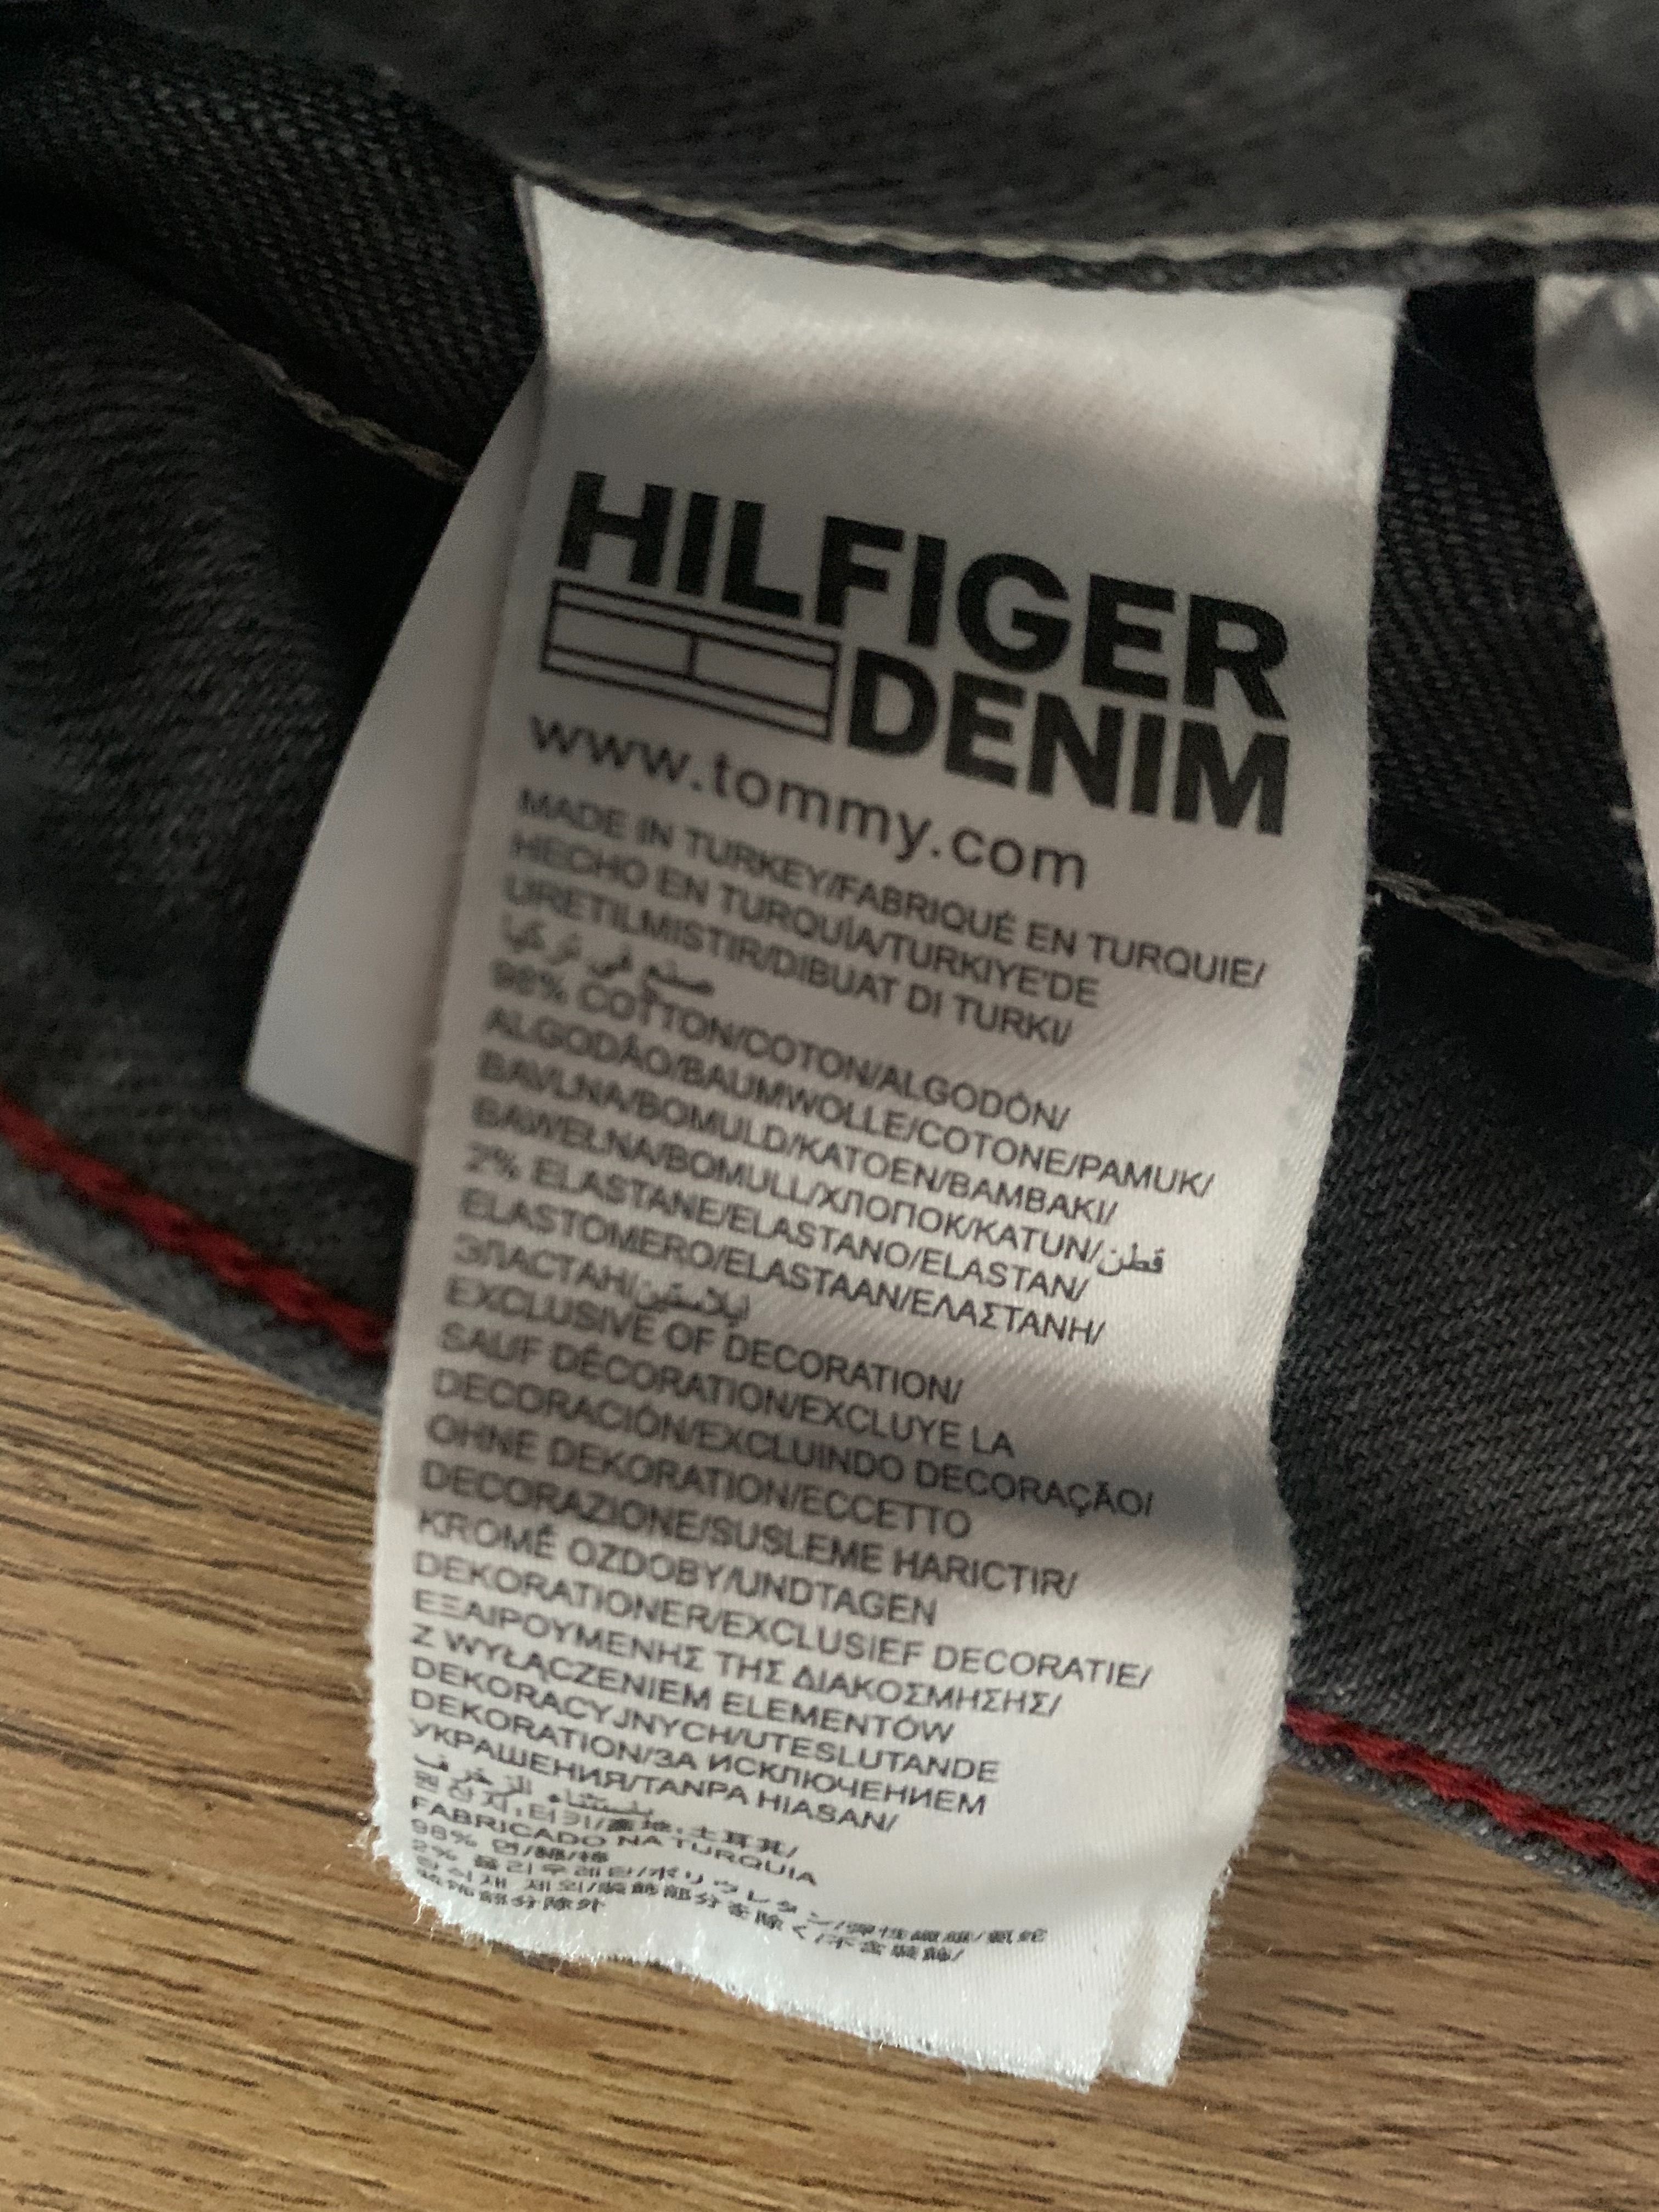 Spodnie jeansowe Tommy Hilfiger